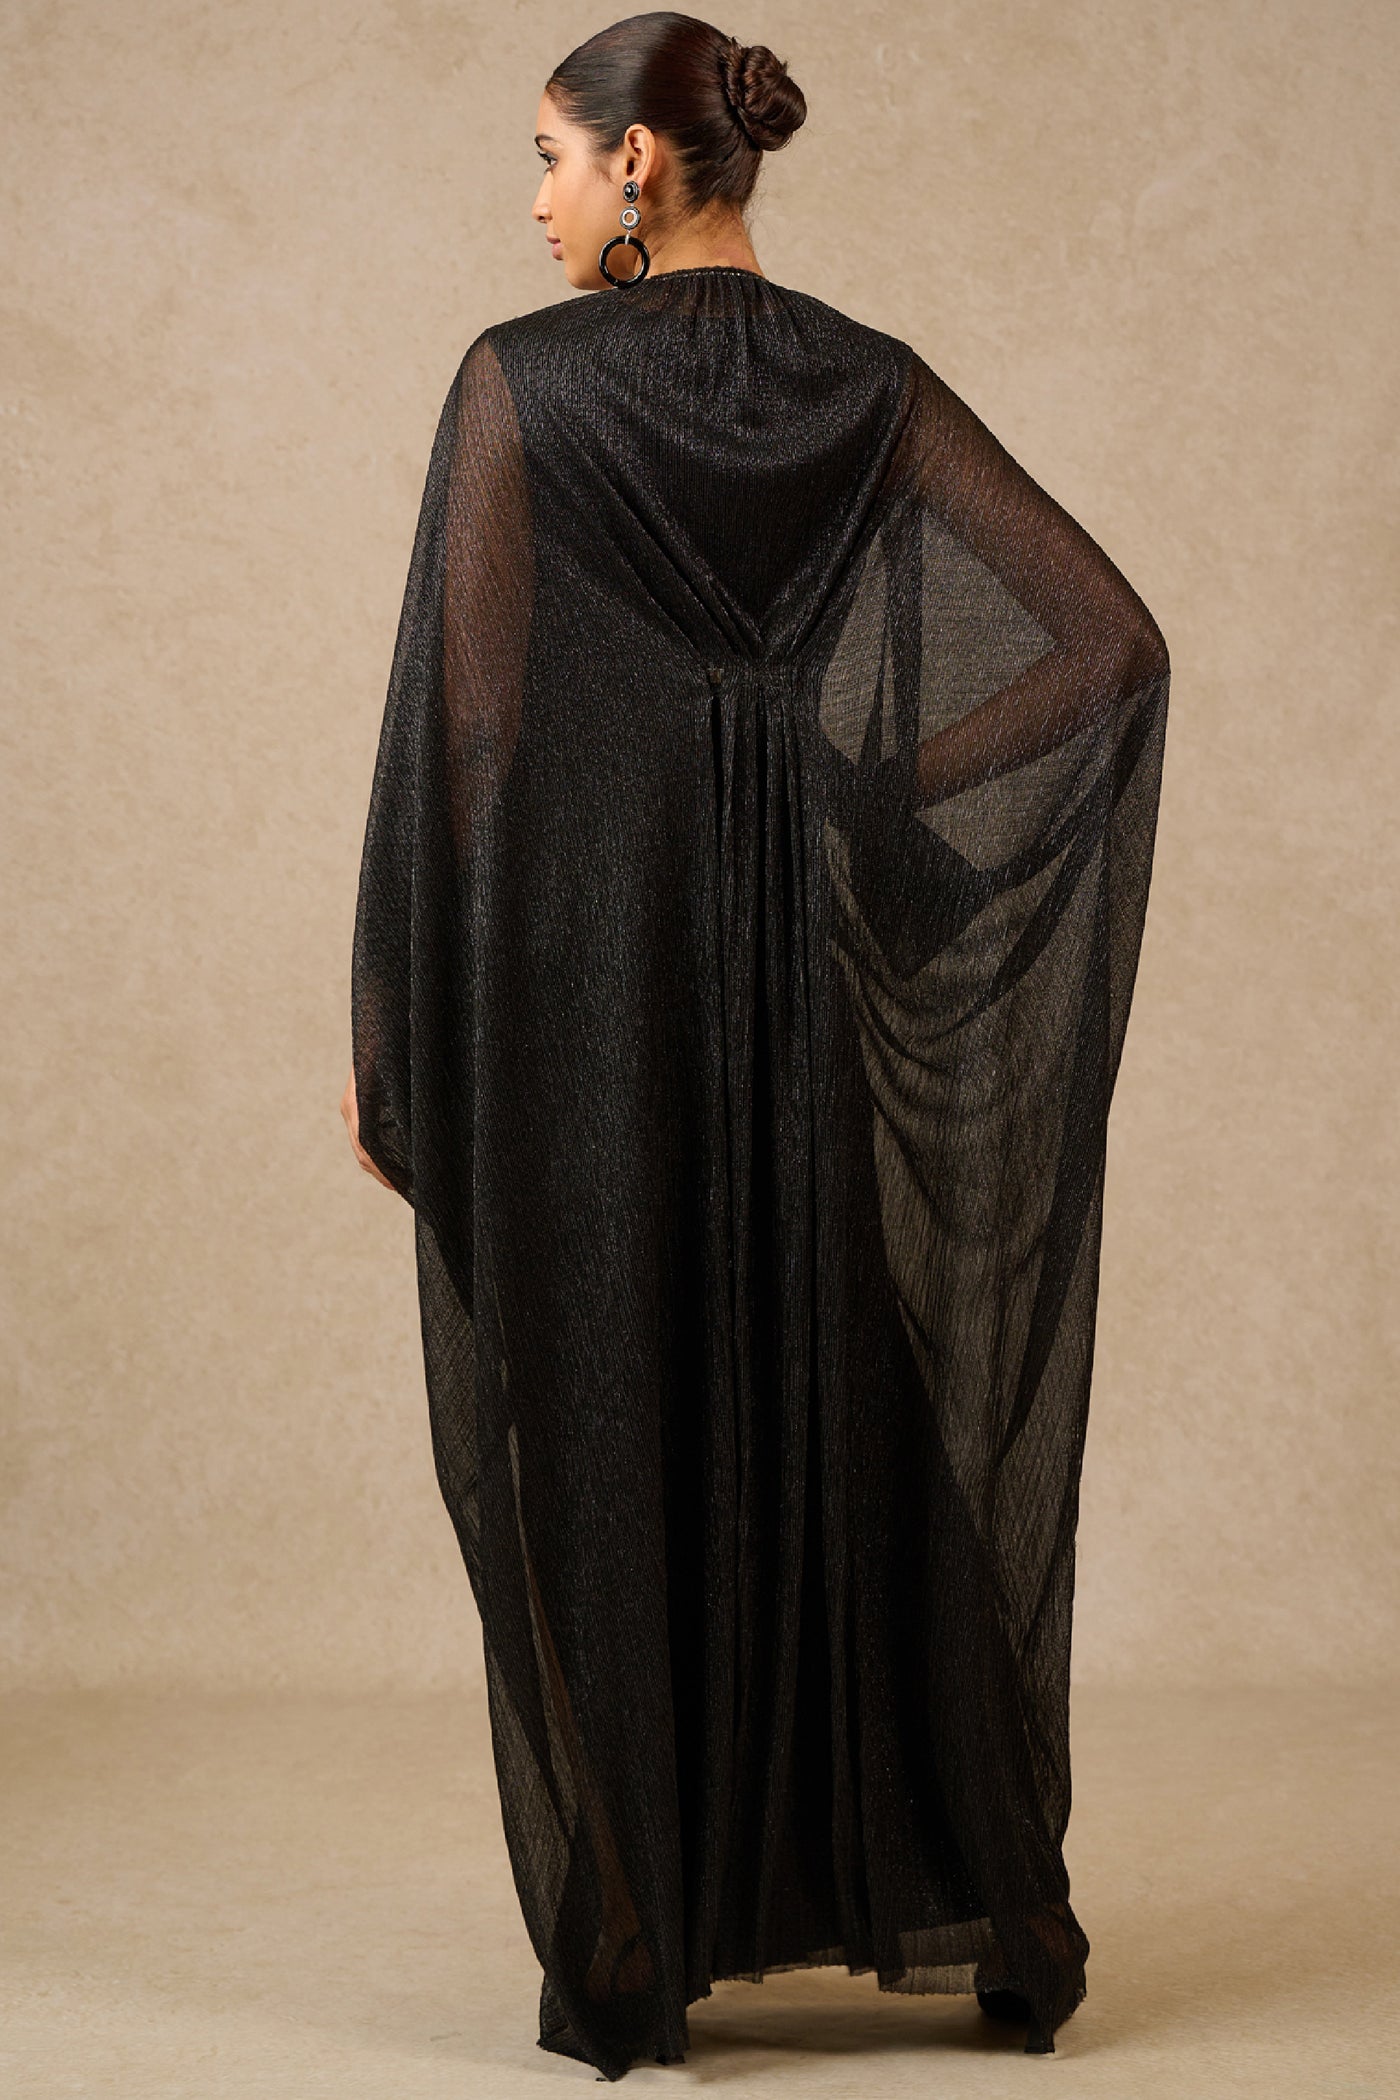 Tarun Tahiliani Dress Slip Black Silver Indian designer wear online shopping melange singapore